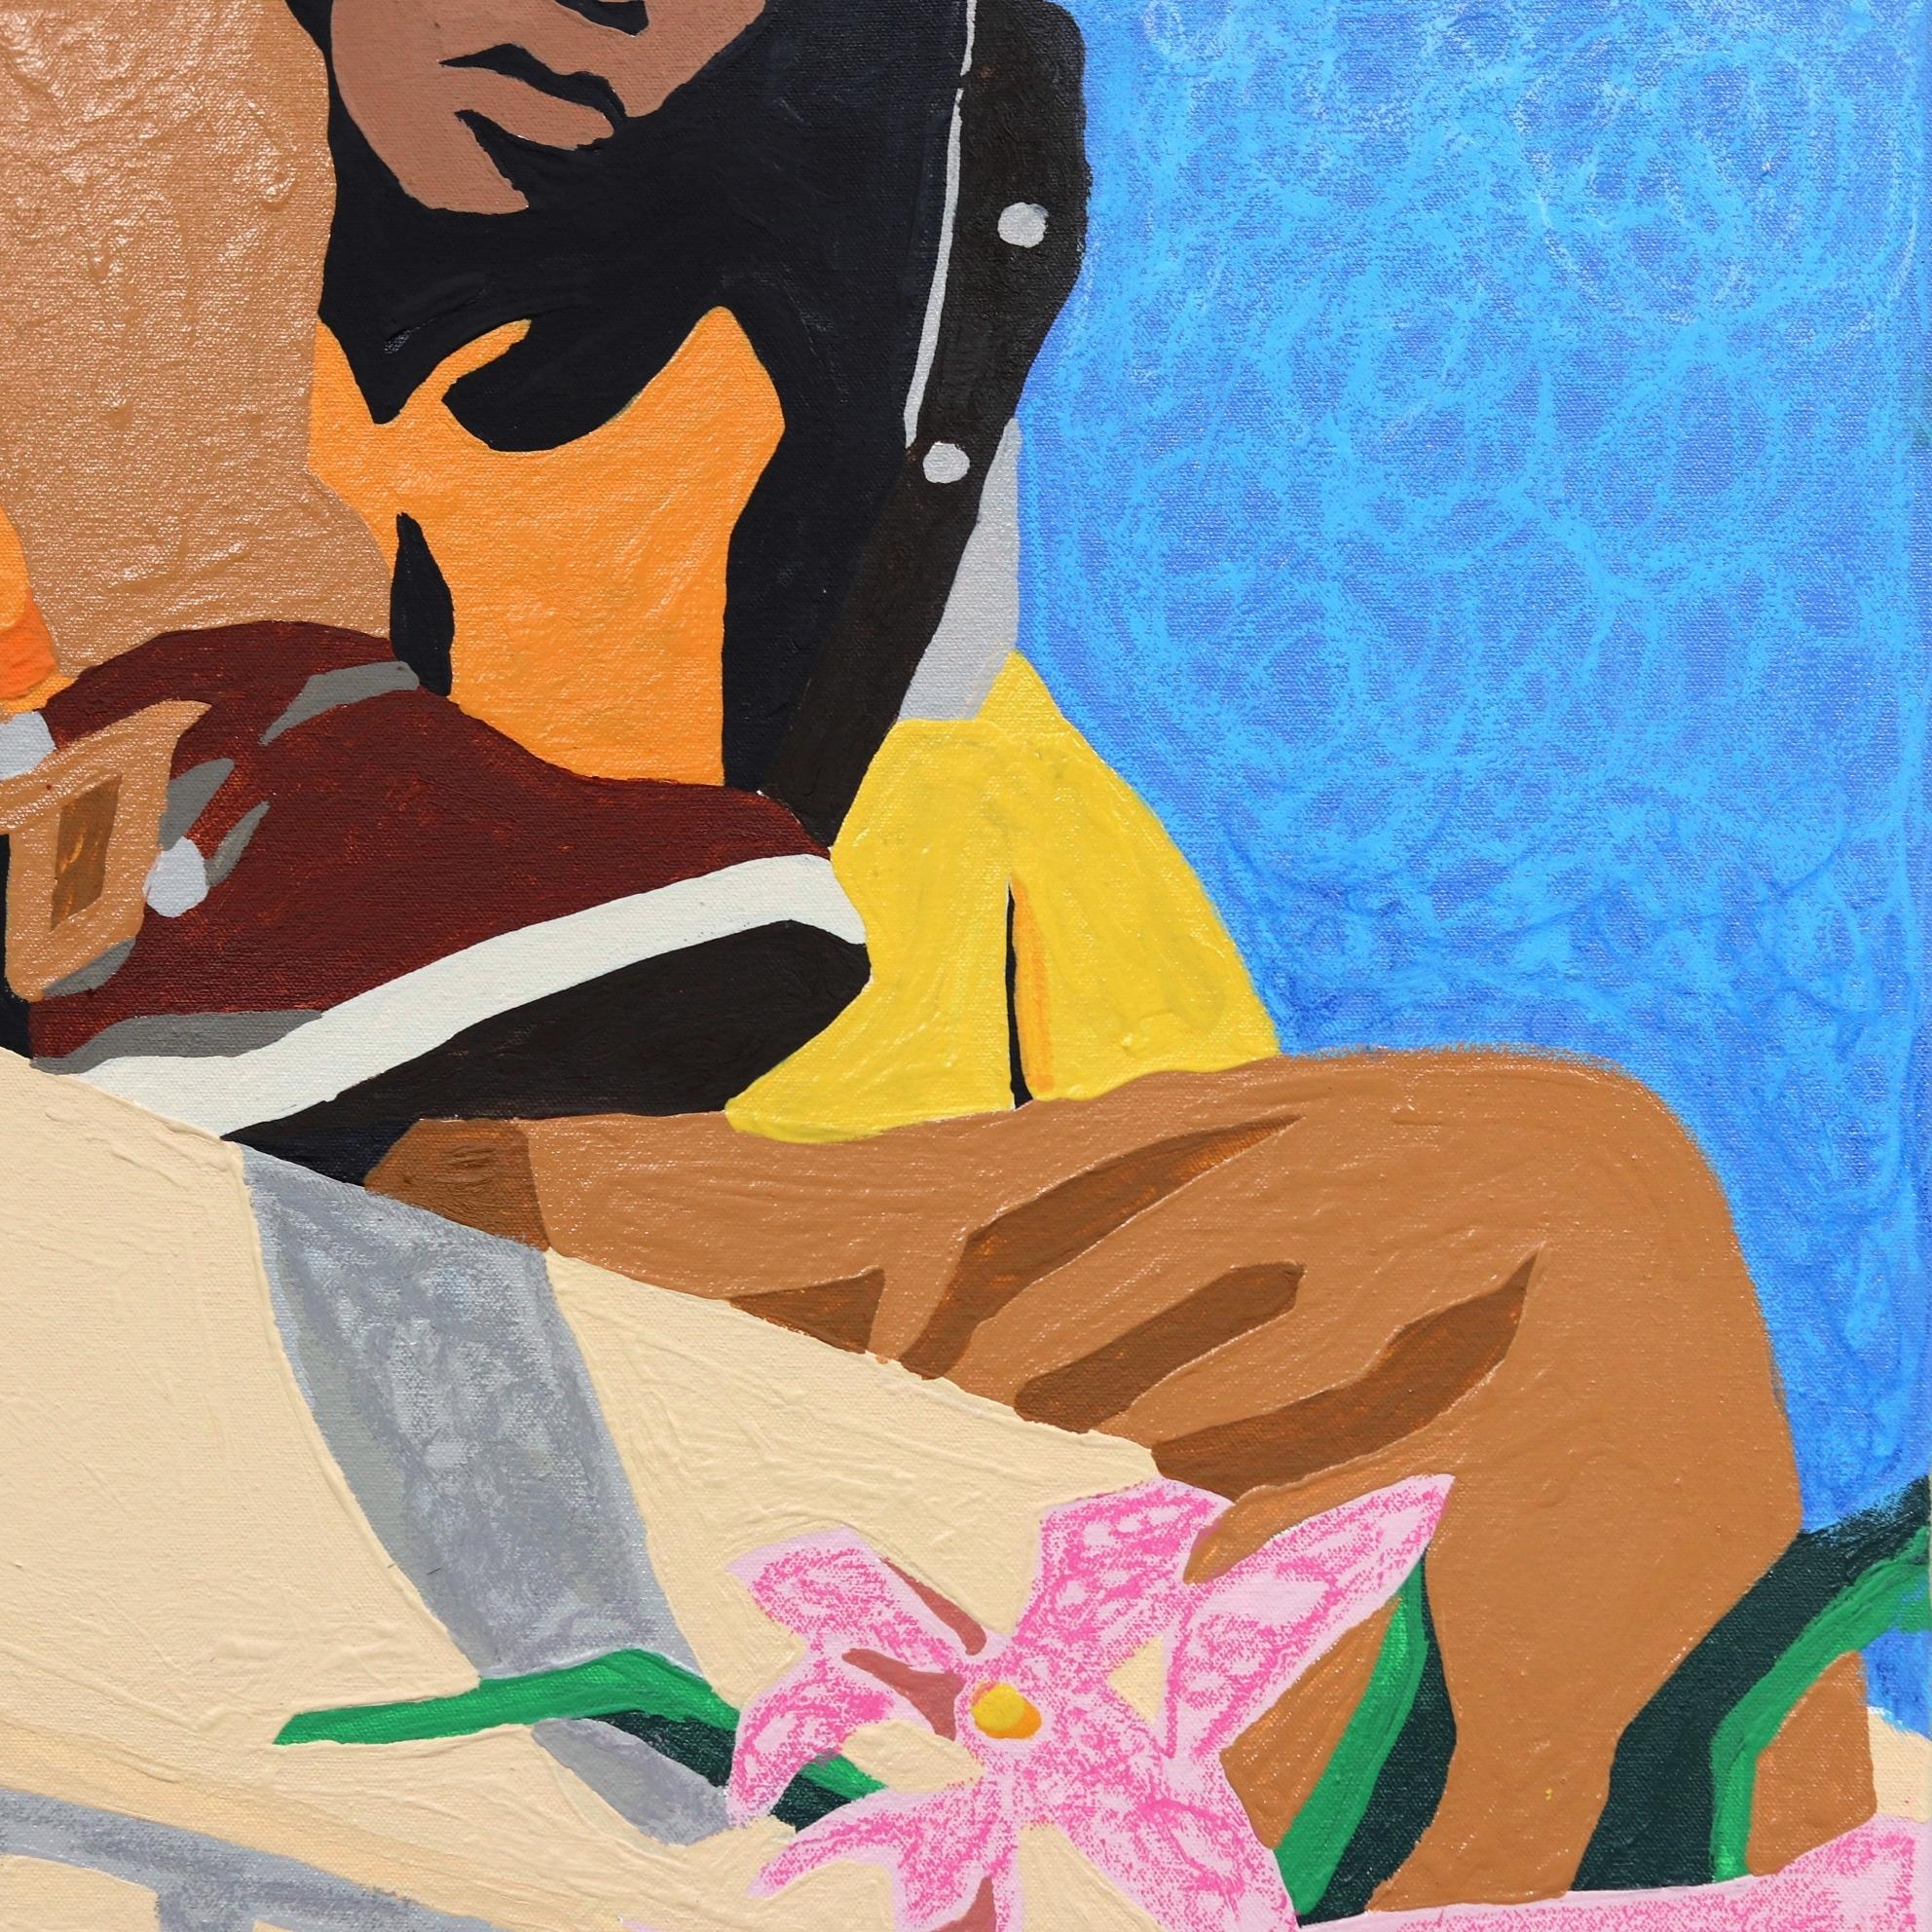 Die Kunstwerke von Danny Brown stellen eine enge Verbindung zwischen ihm und den verschiedenen Gemeinschaften in Los Angeles her. Brown kombiniert Kunstgeschichte, Streetwear-Trends und Pop-Art-Symbolik zu einem unverwechselbaren Stil, der sich